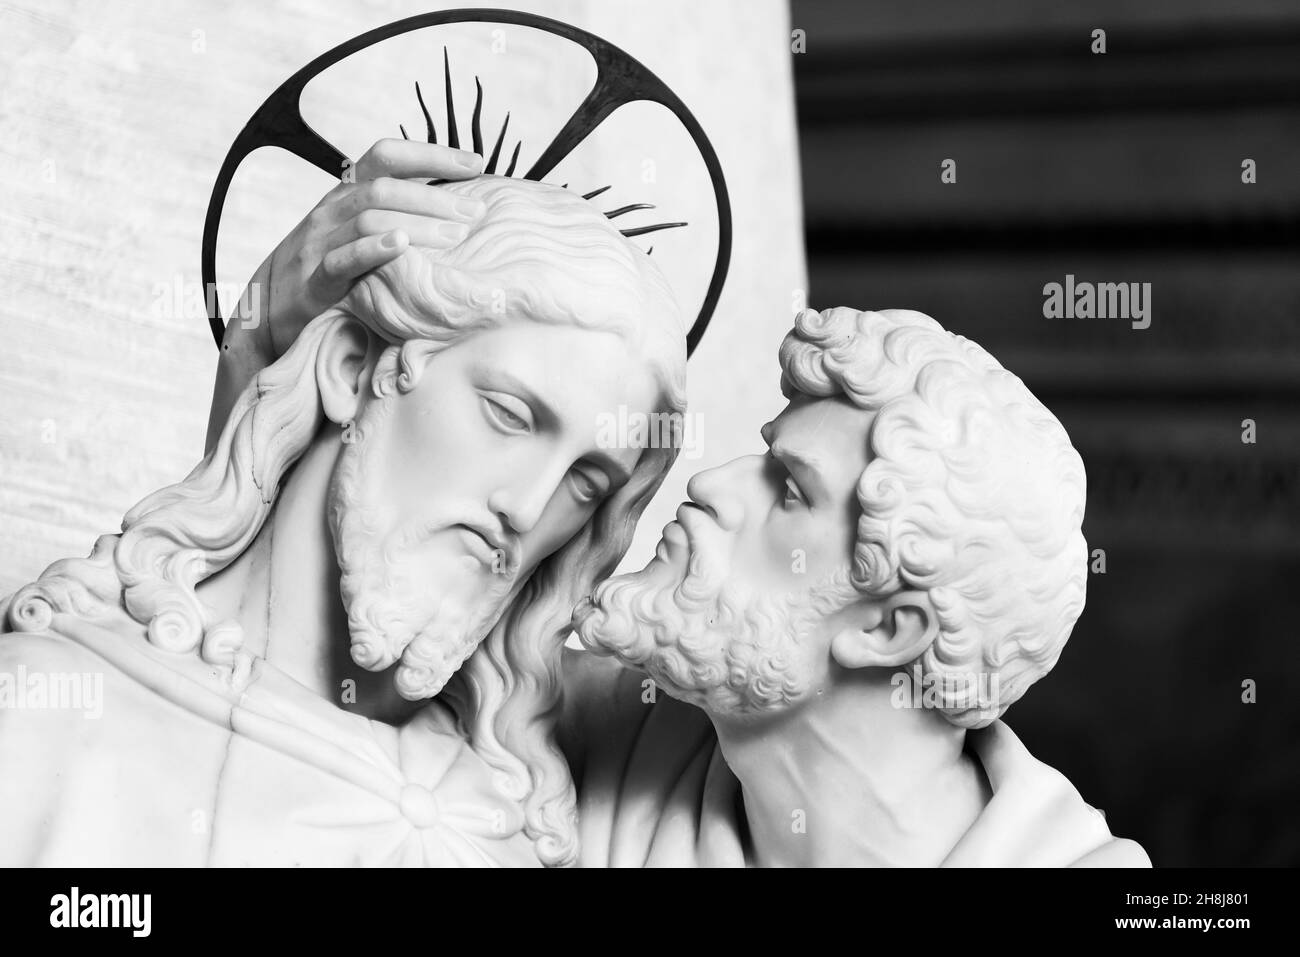 Foto in bianco e nero che mostra statue in primo piano raffiguranti Giuda che bacia Gesù sulla guancia Foto Stock